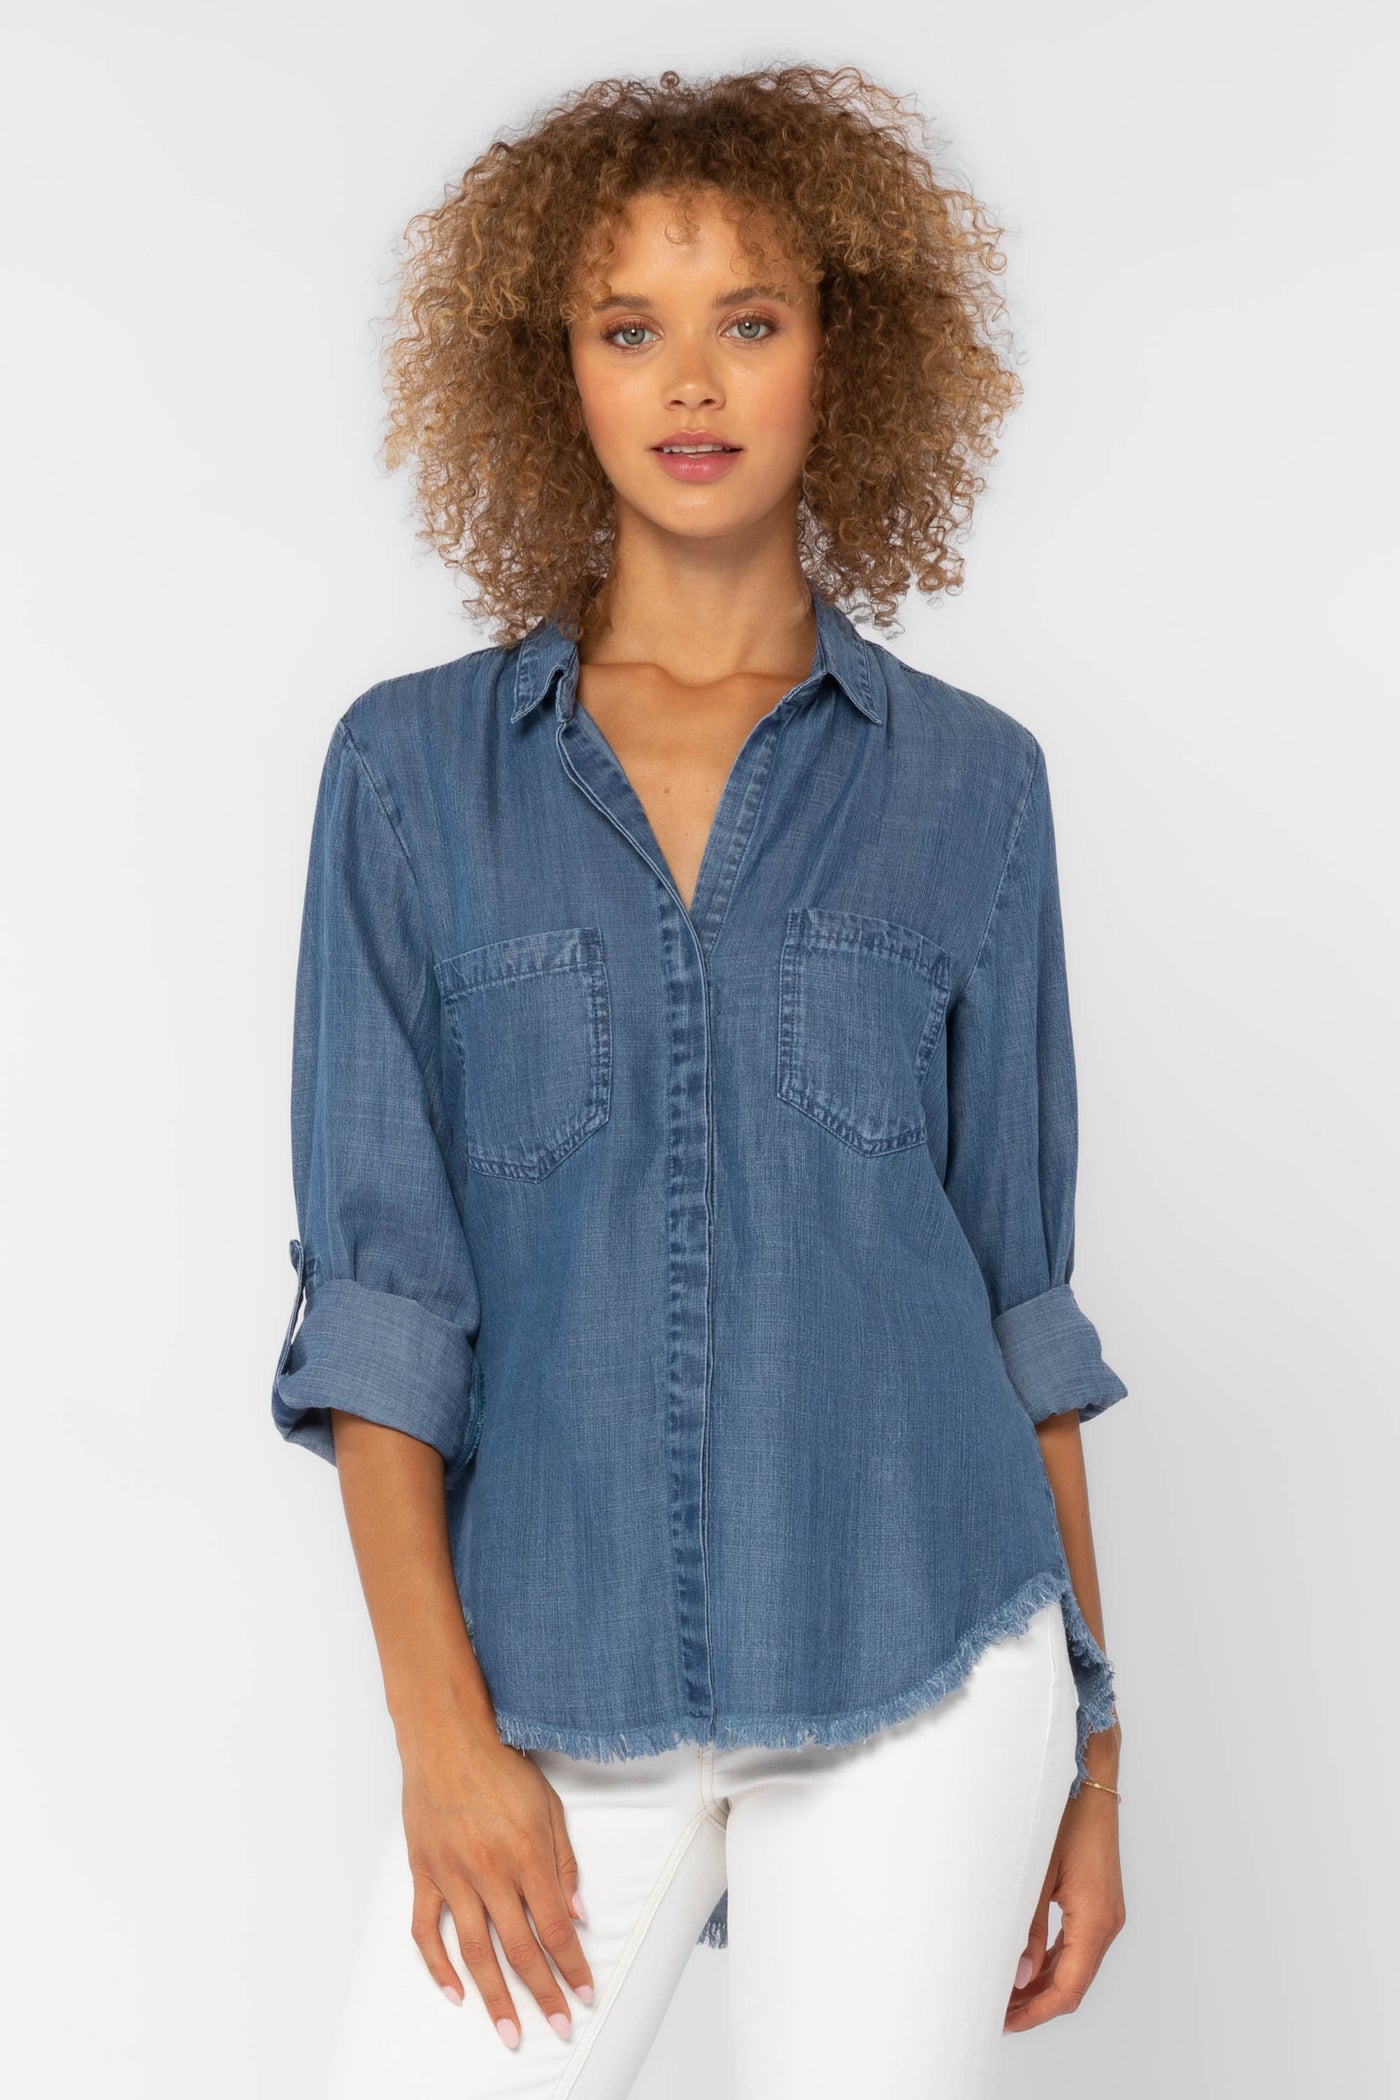 Riley Blue Denim Shirt - Tops - Velvet Heart Clothing